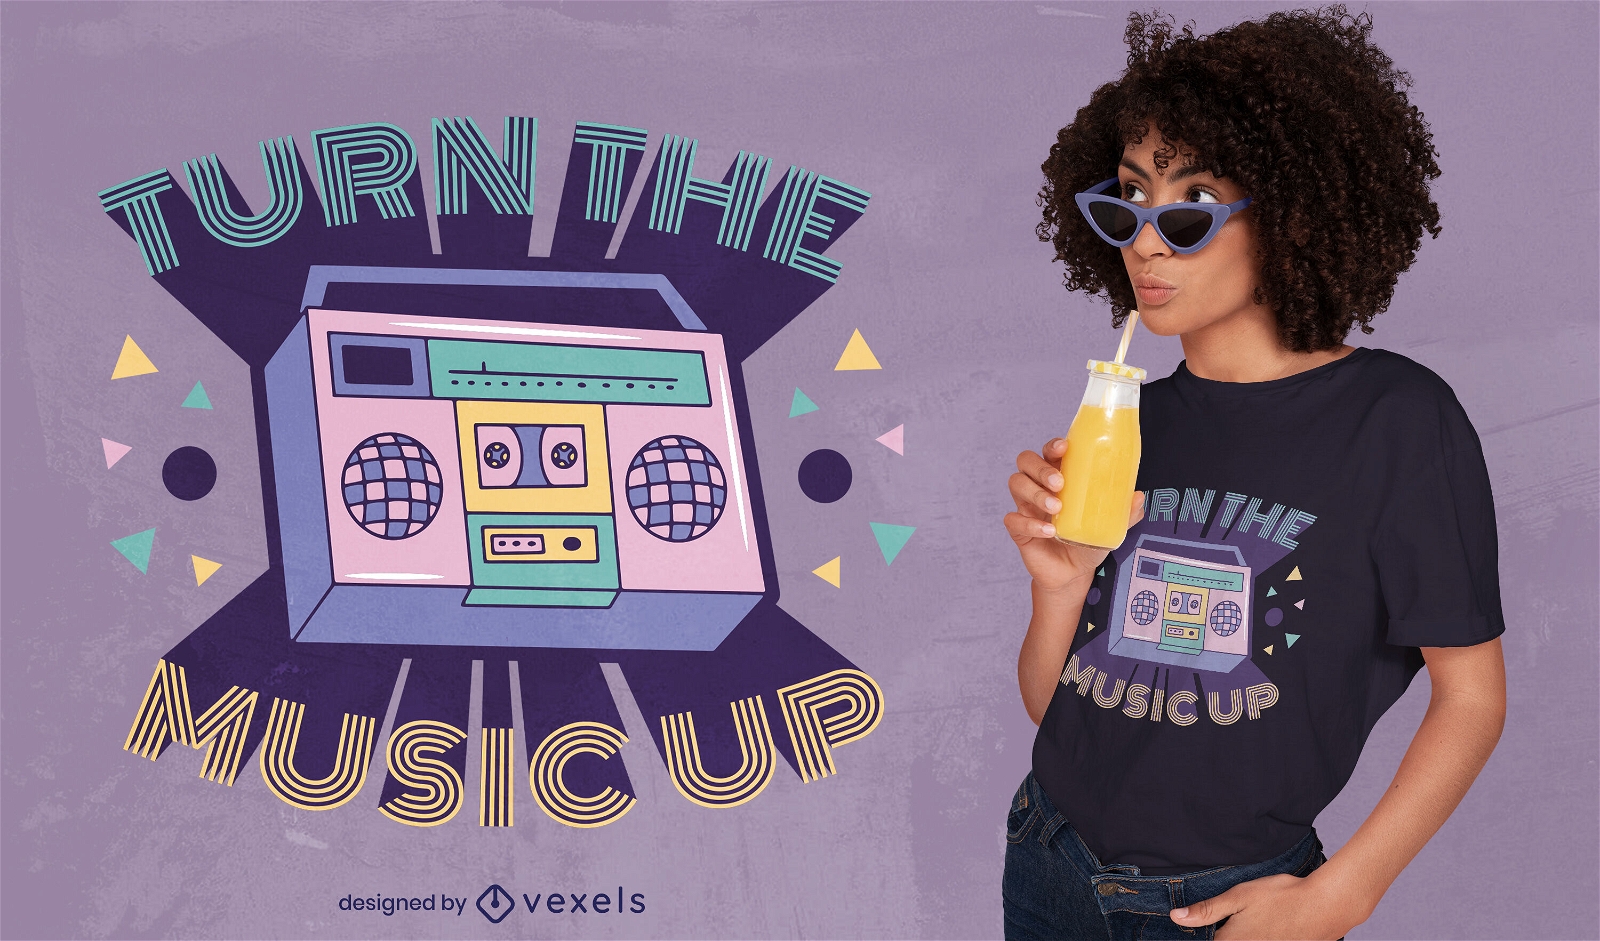 Turn the music up radio t-shirt design